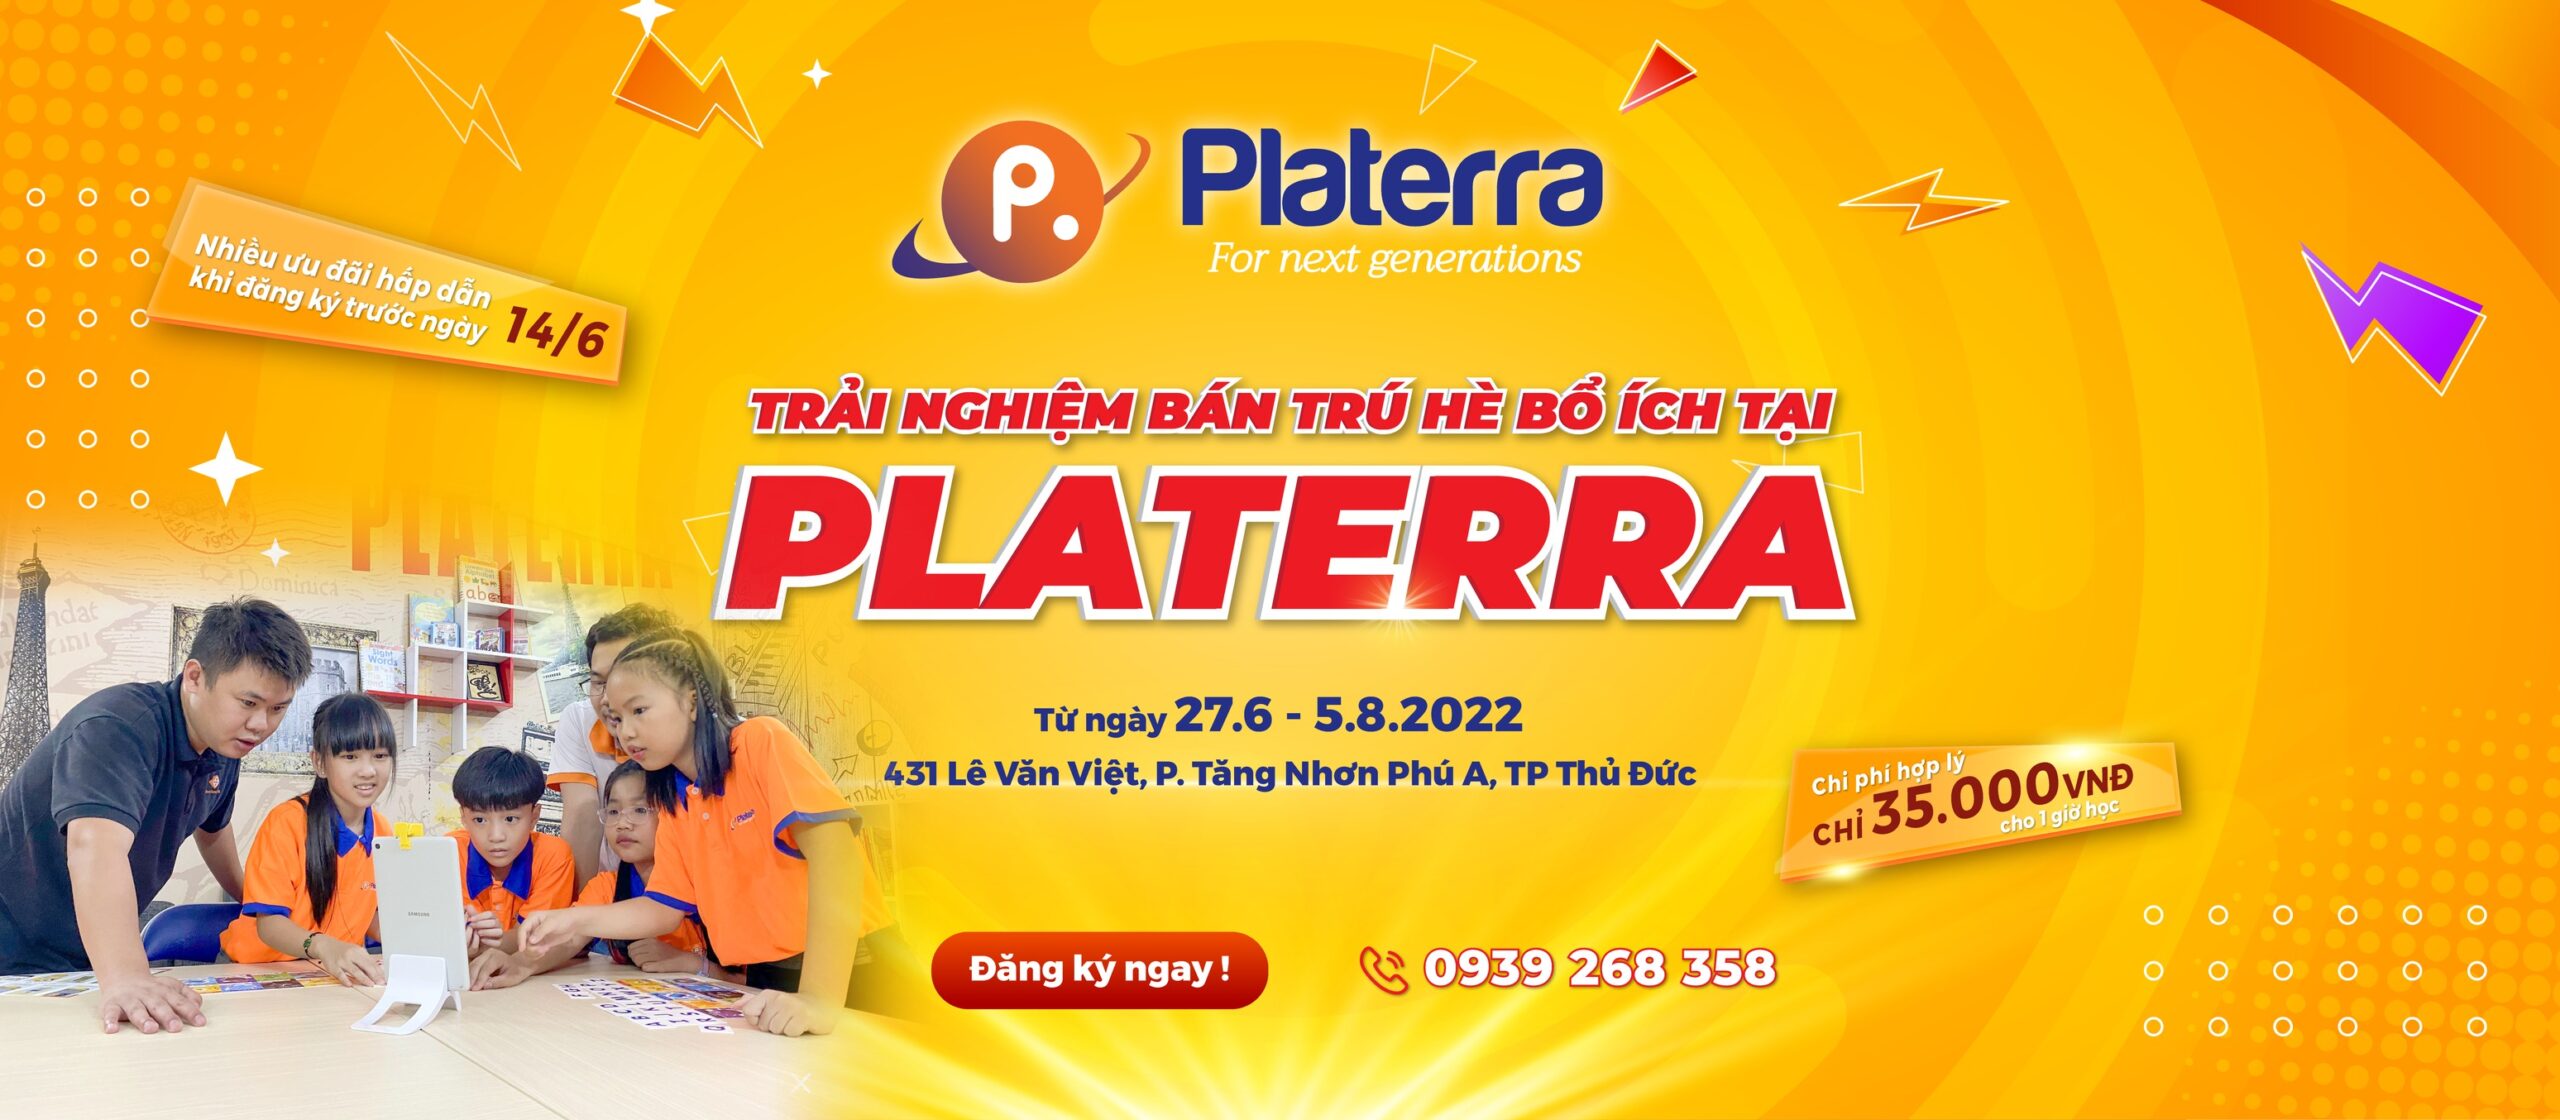 Liên hệ ngay Platerra để biết thêm nhiều thông tin chi tiết nhé!